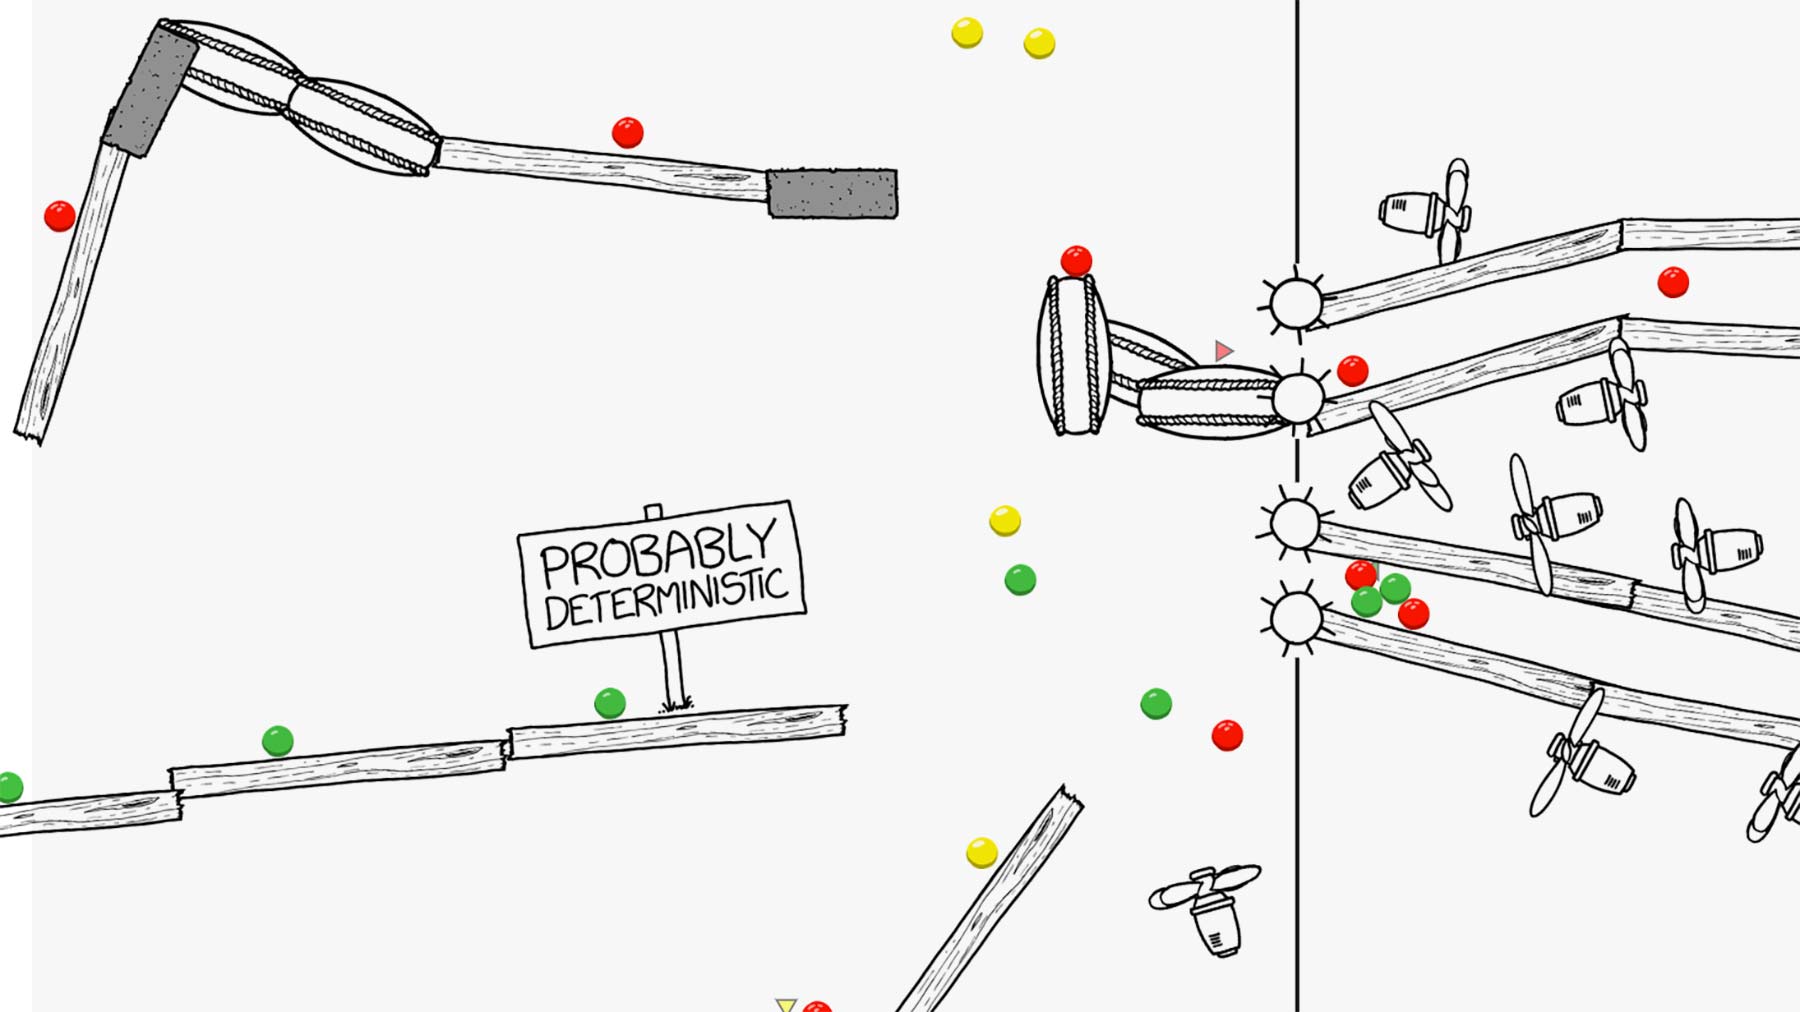 xkcd lässt uns eine unendliche Ballmaschine bauen